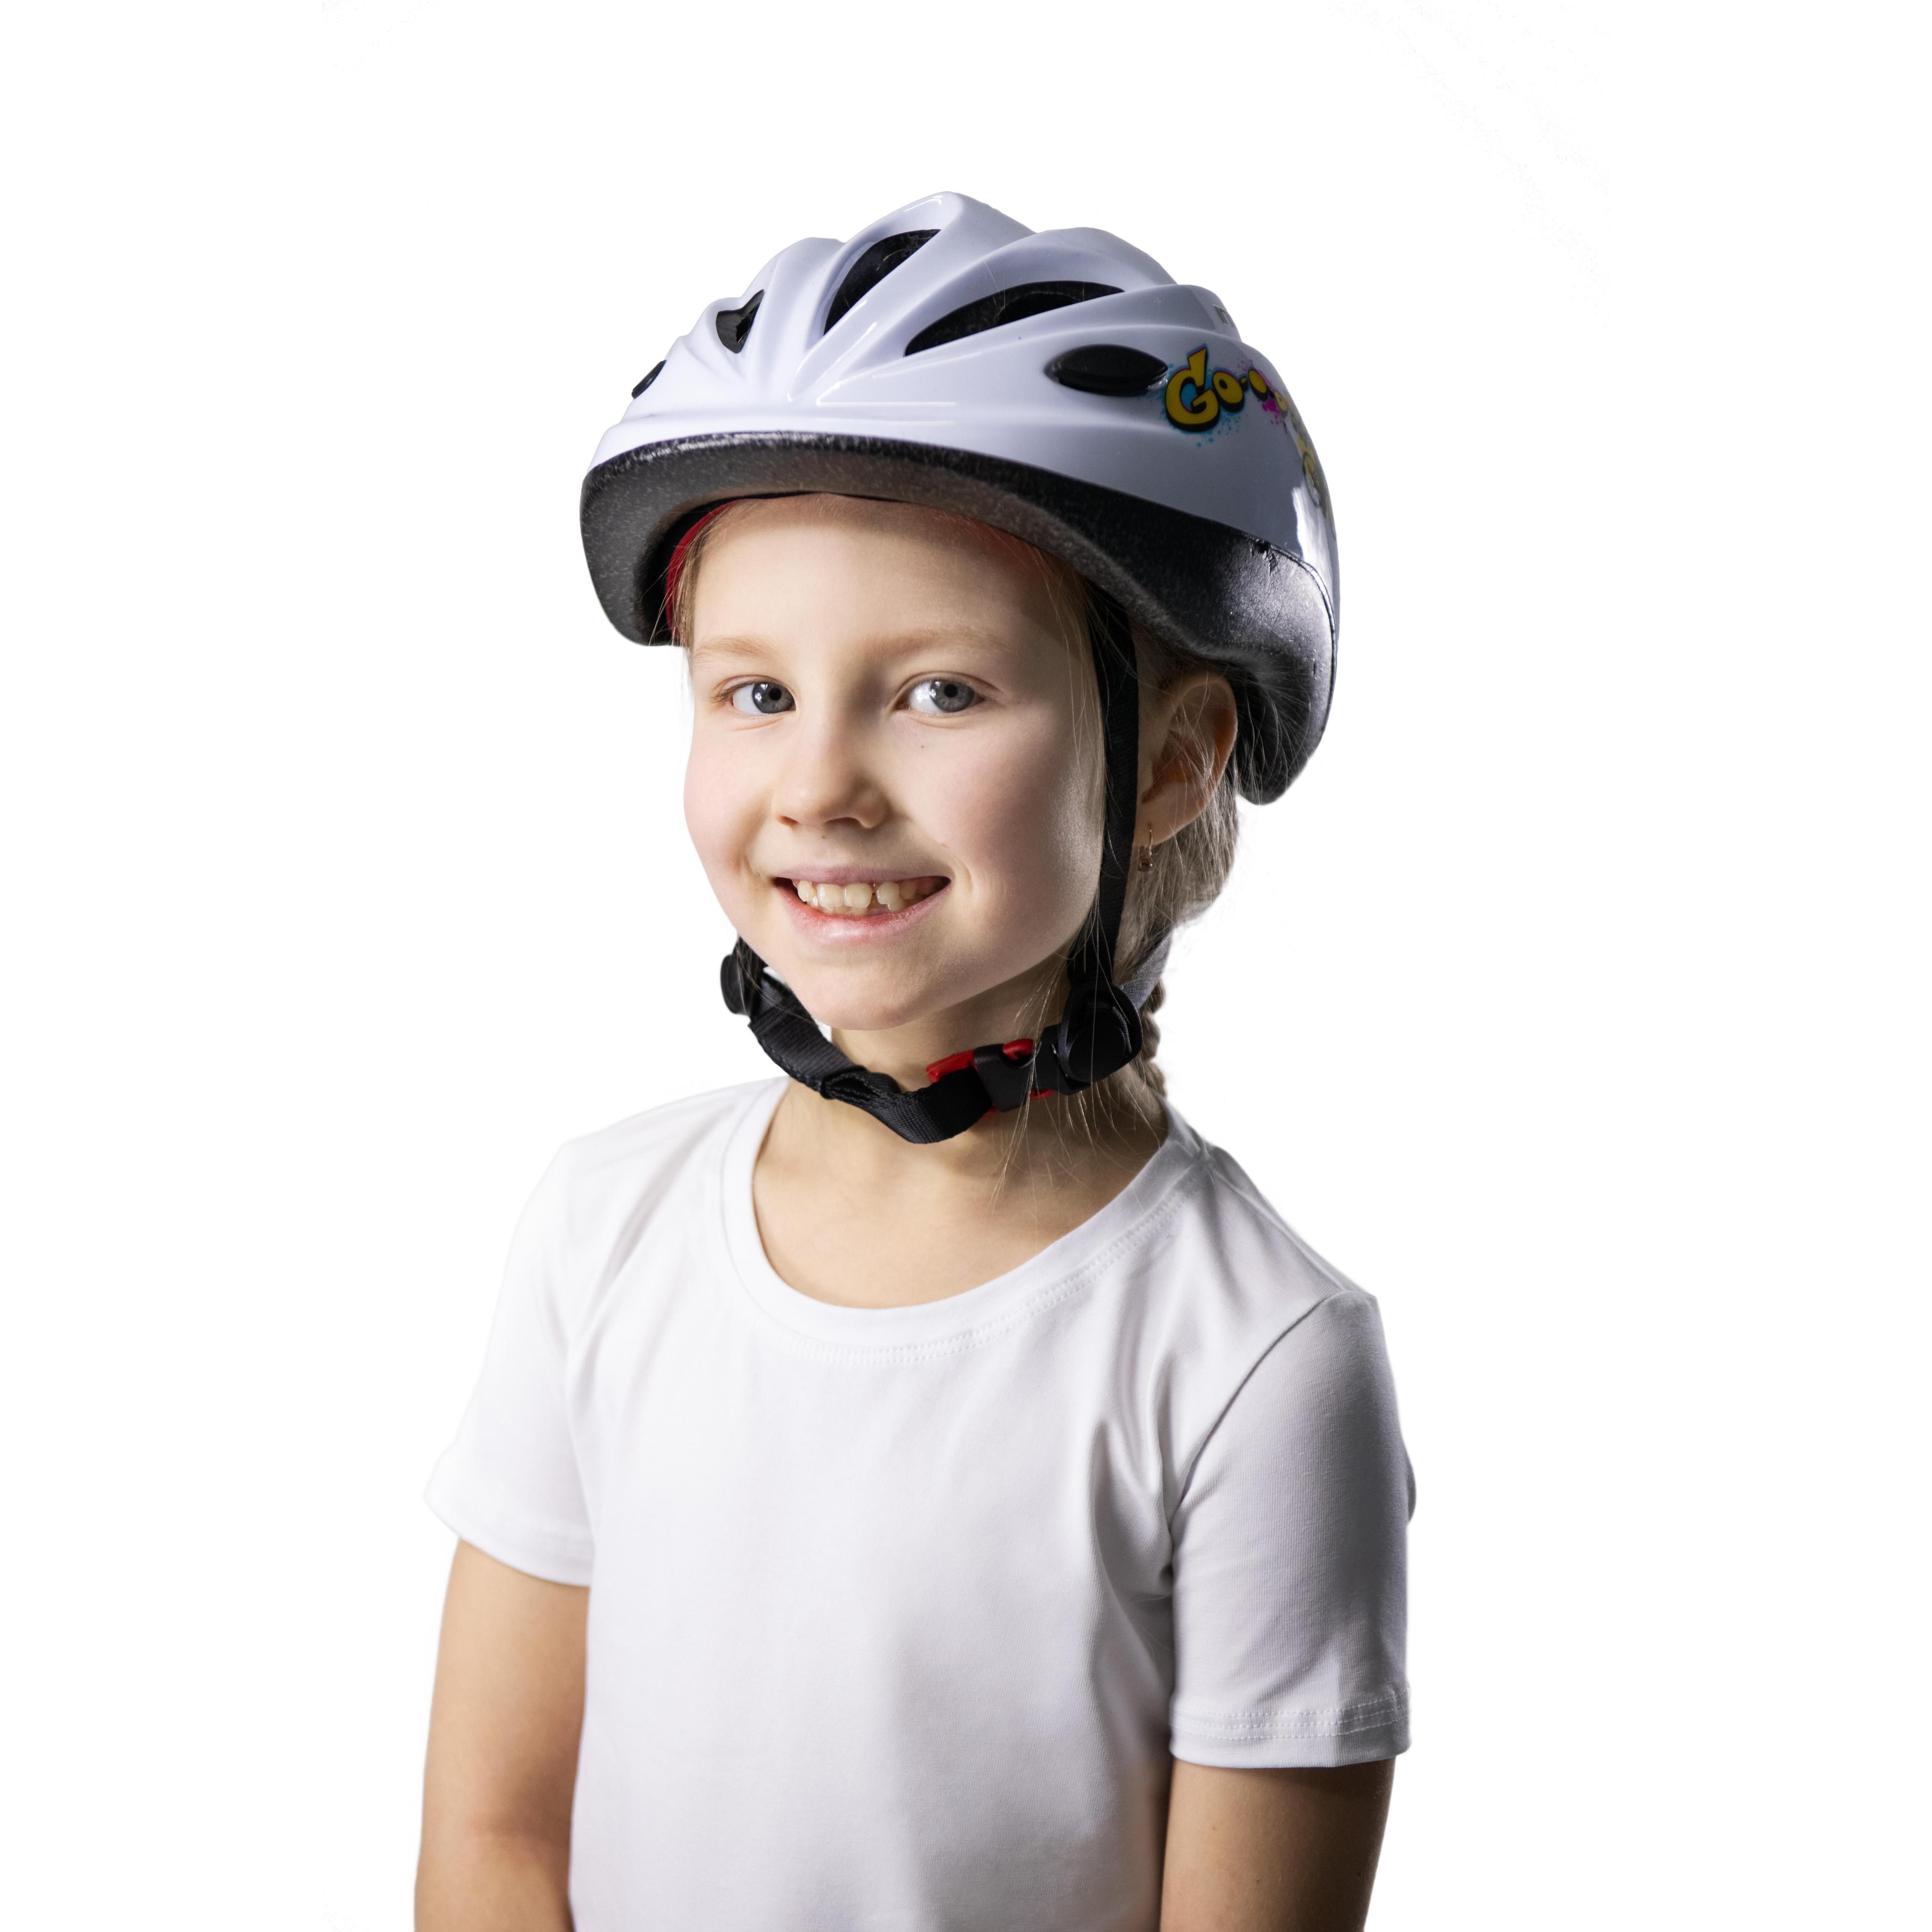 Casco de Bicicleta Infantil con Ventilación GO INDIGO 48-56 cm Blanco